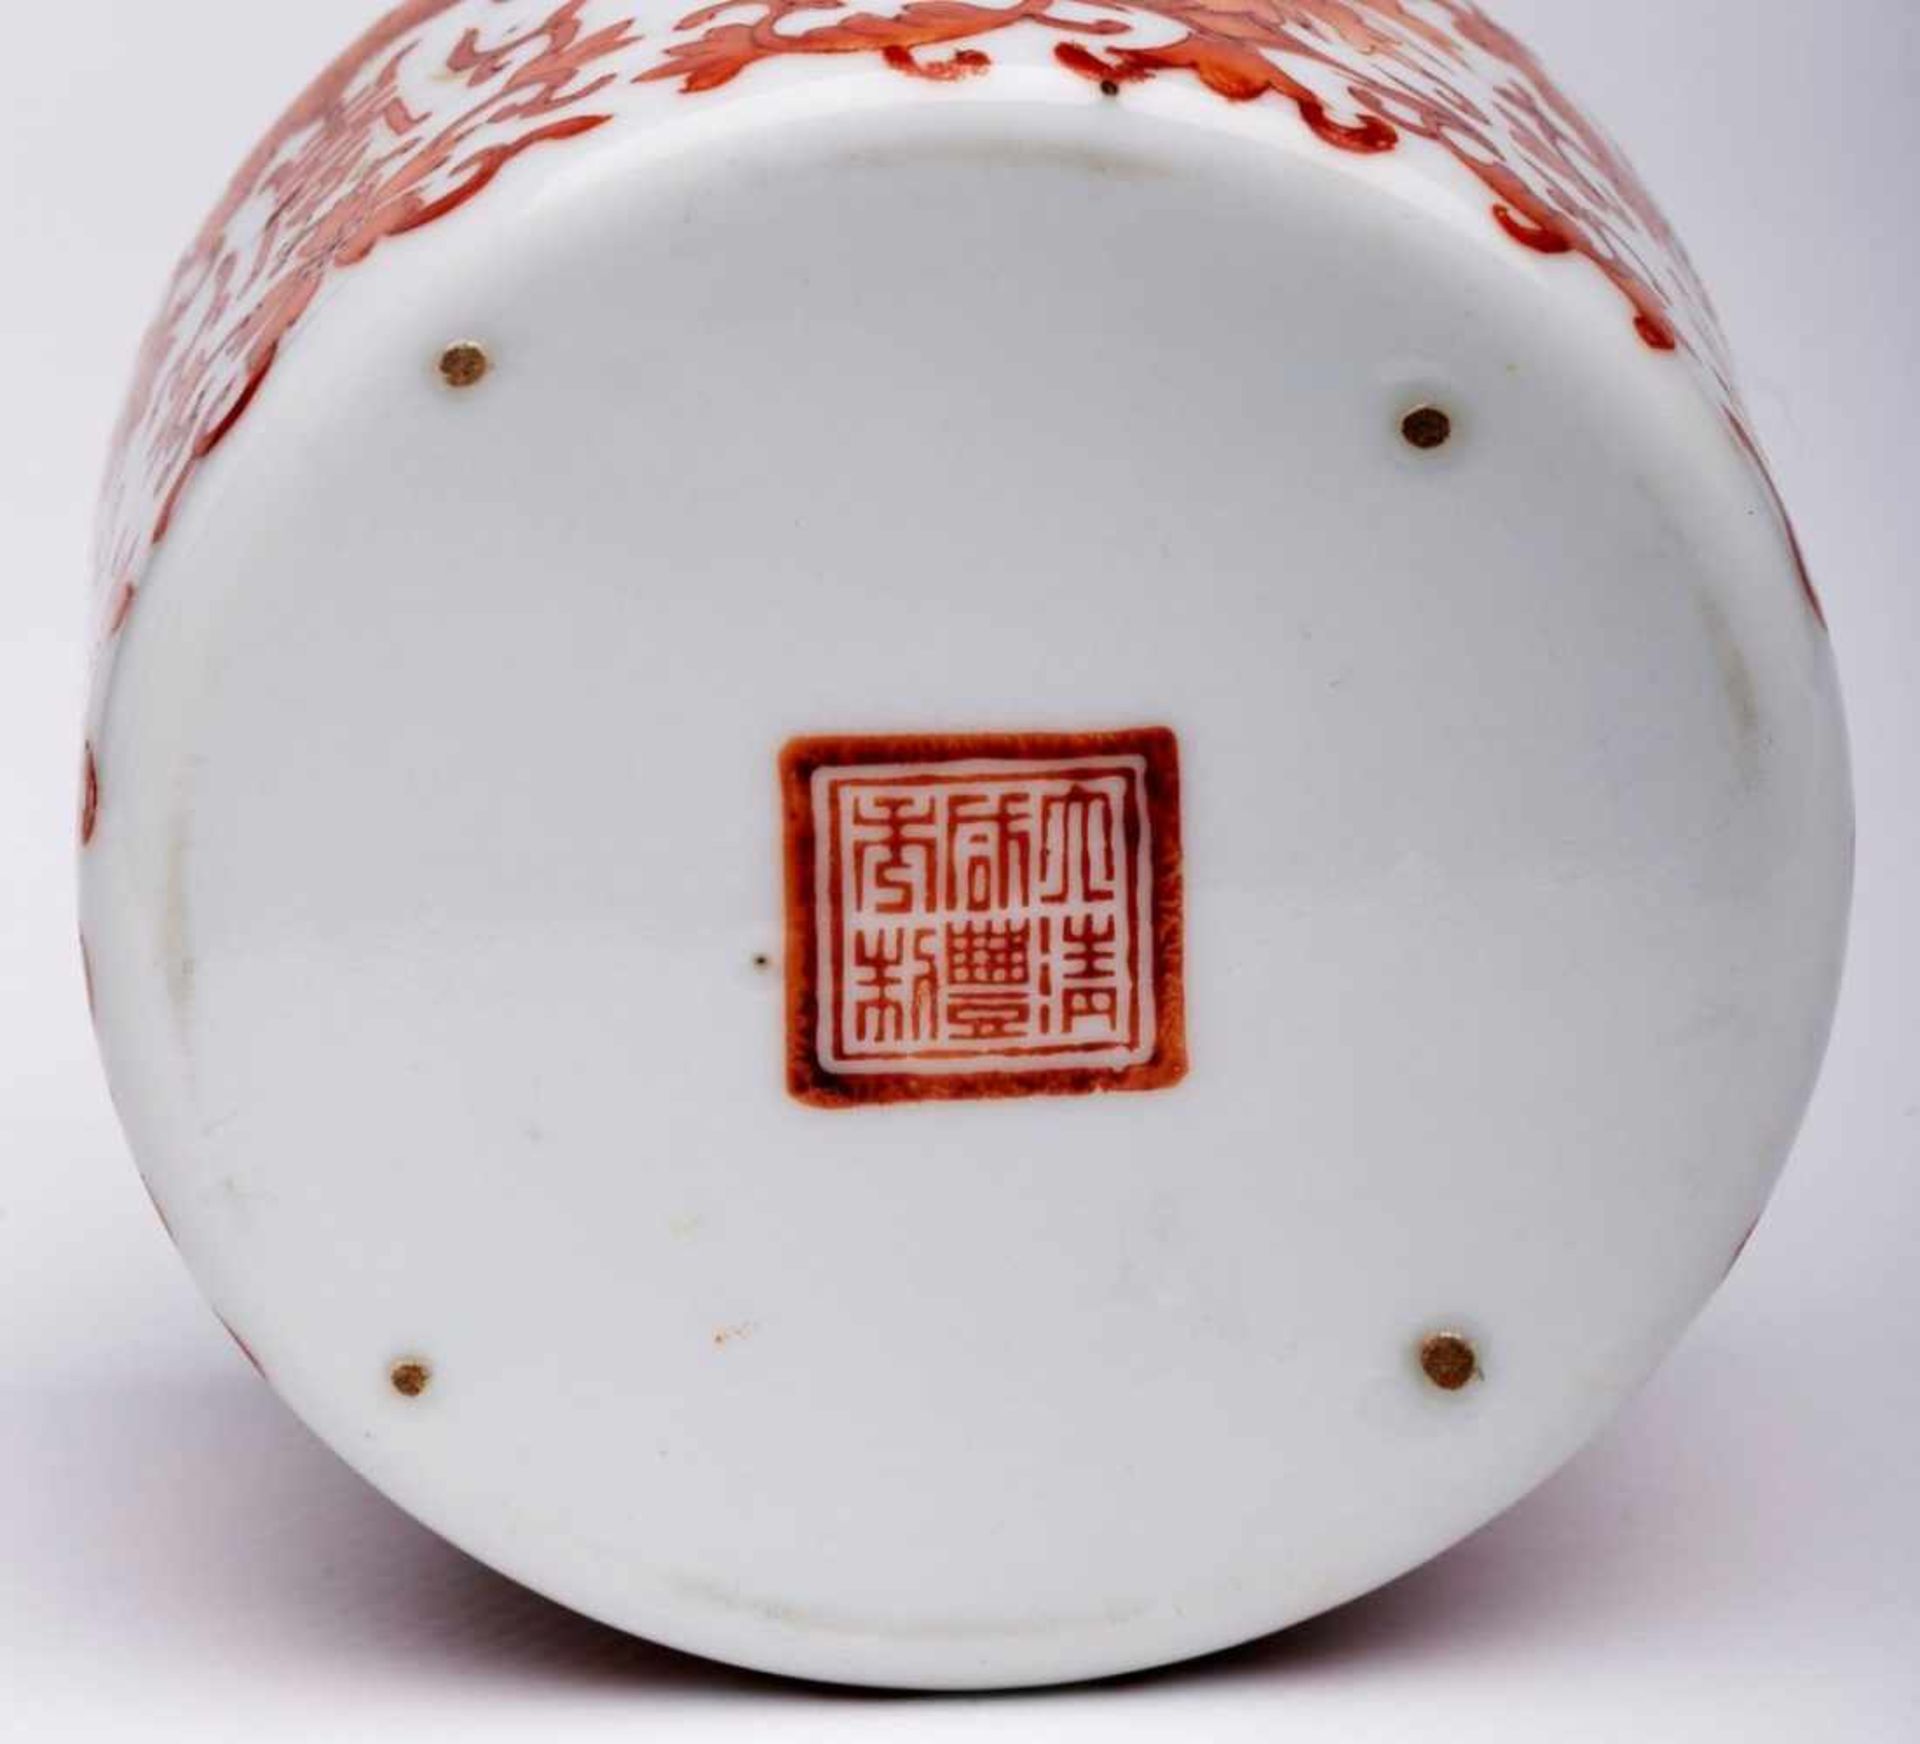 Kl. Tintenfass, China wohl um 1900.Porzellan m. eisenrotem Emaillefarbendekor. Gedrungener - Bild 2 aus 2